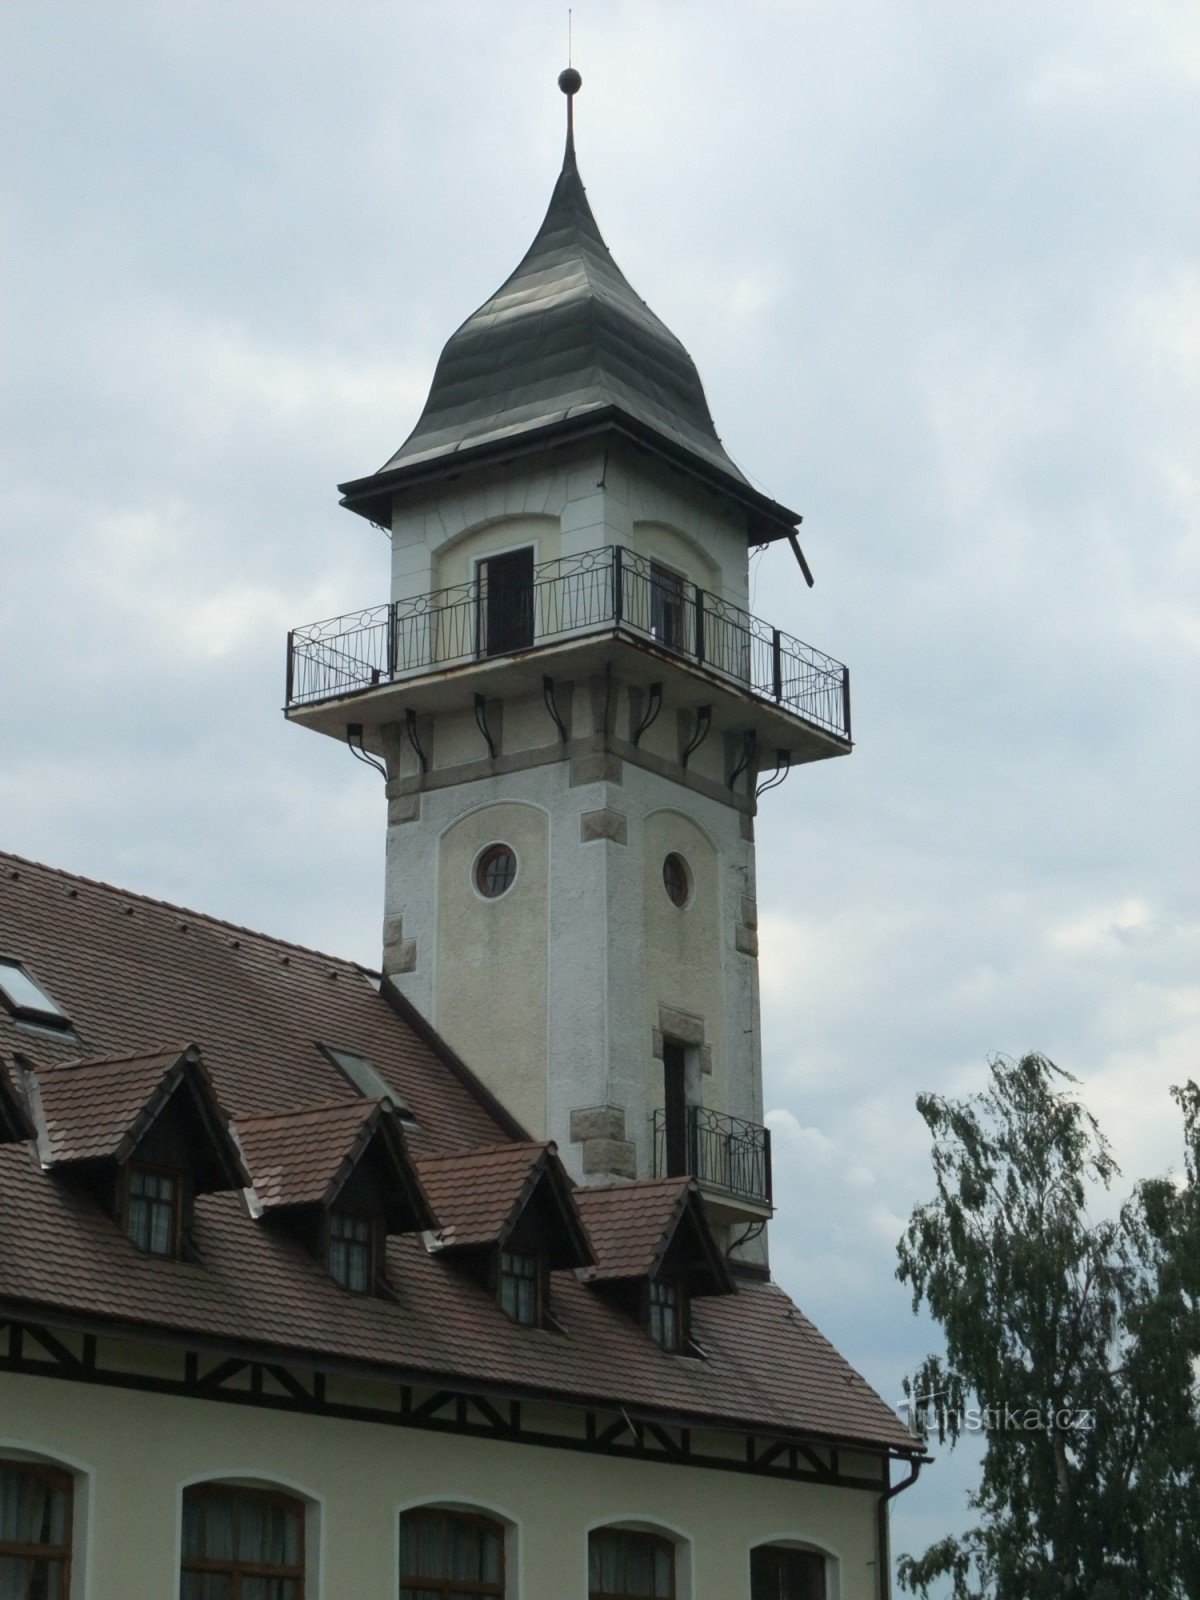 Aussichtsturm Petřín - Jablonec nad Nisou wie in Ihrer Handfläche